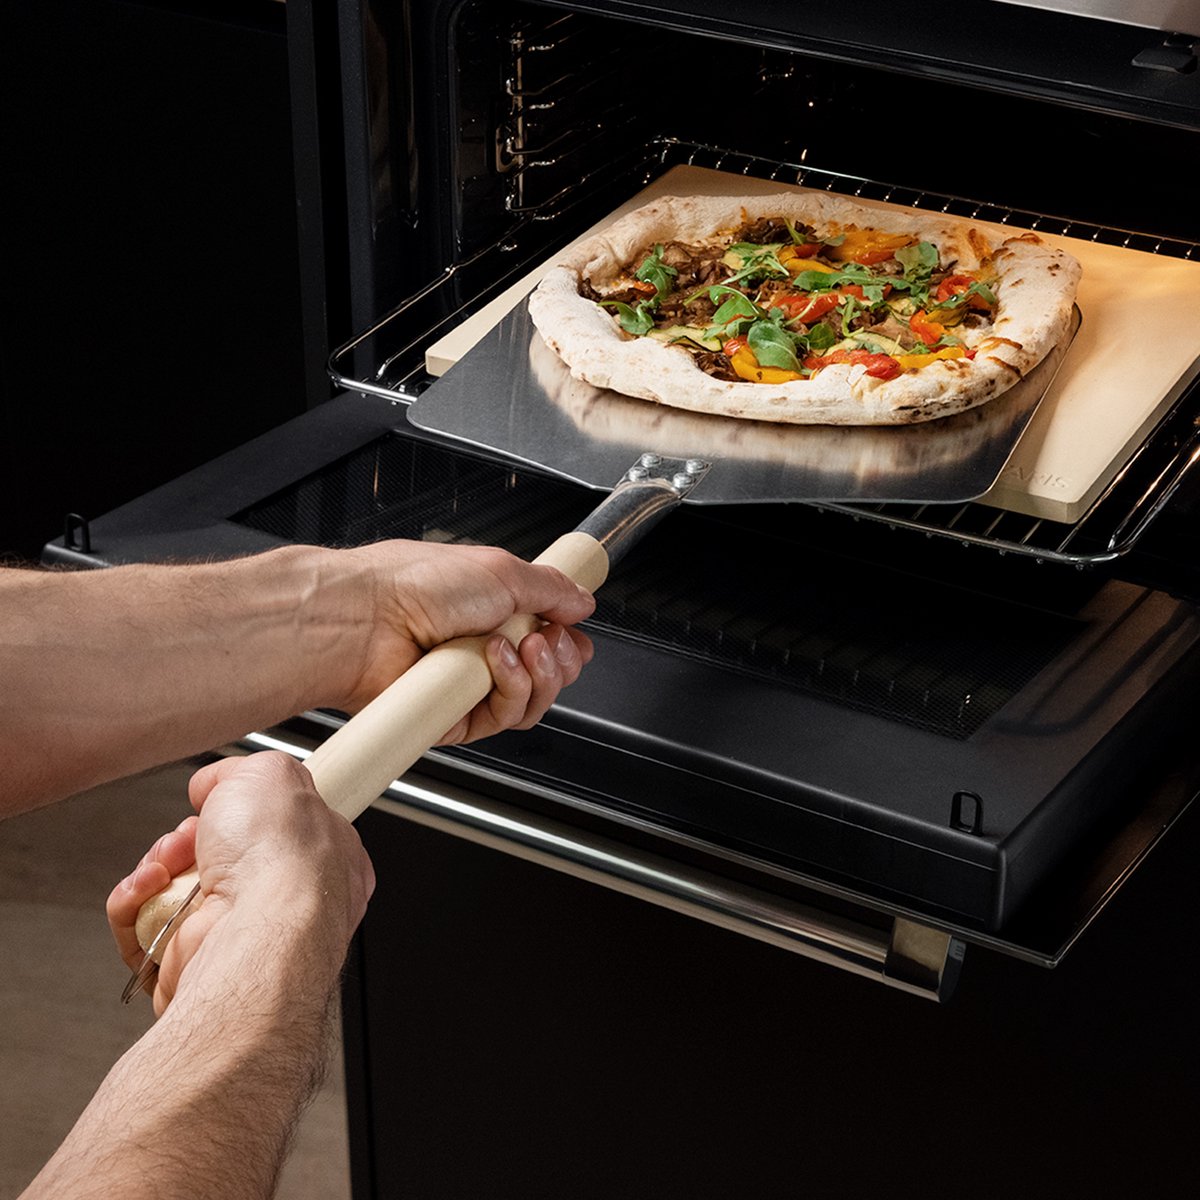 Set à pizza premium : pierre de cuisson rectangulaire et pelle